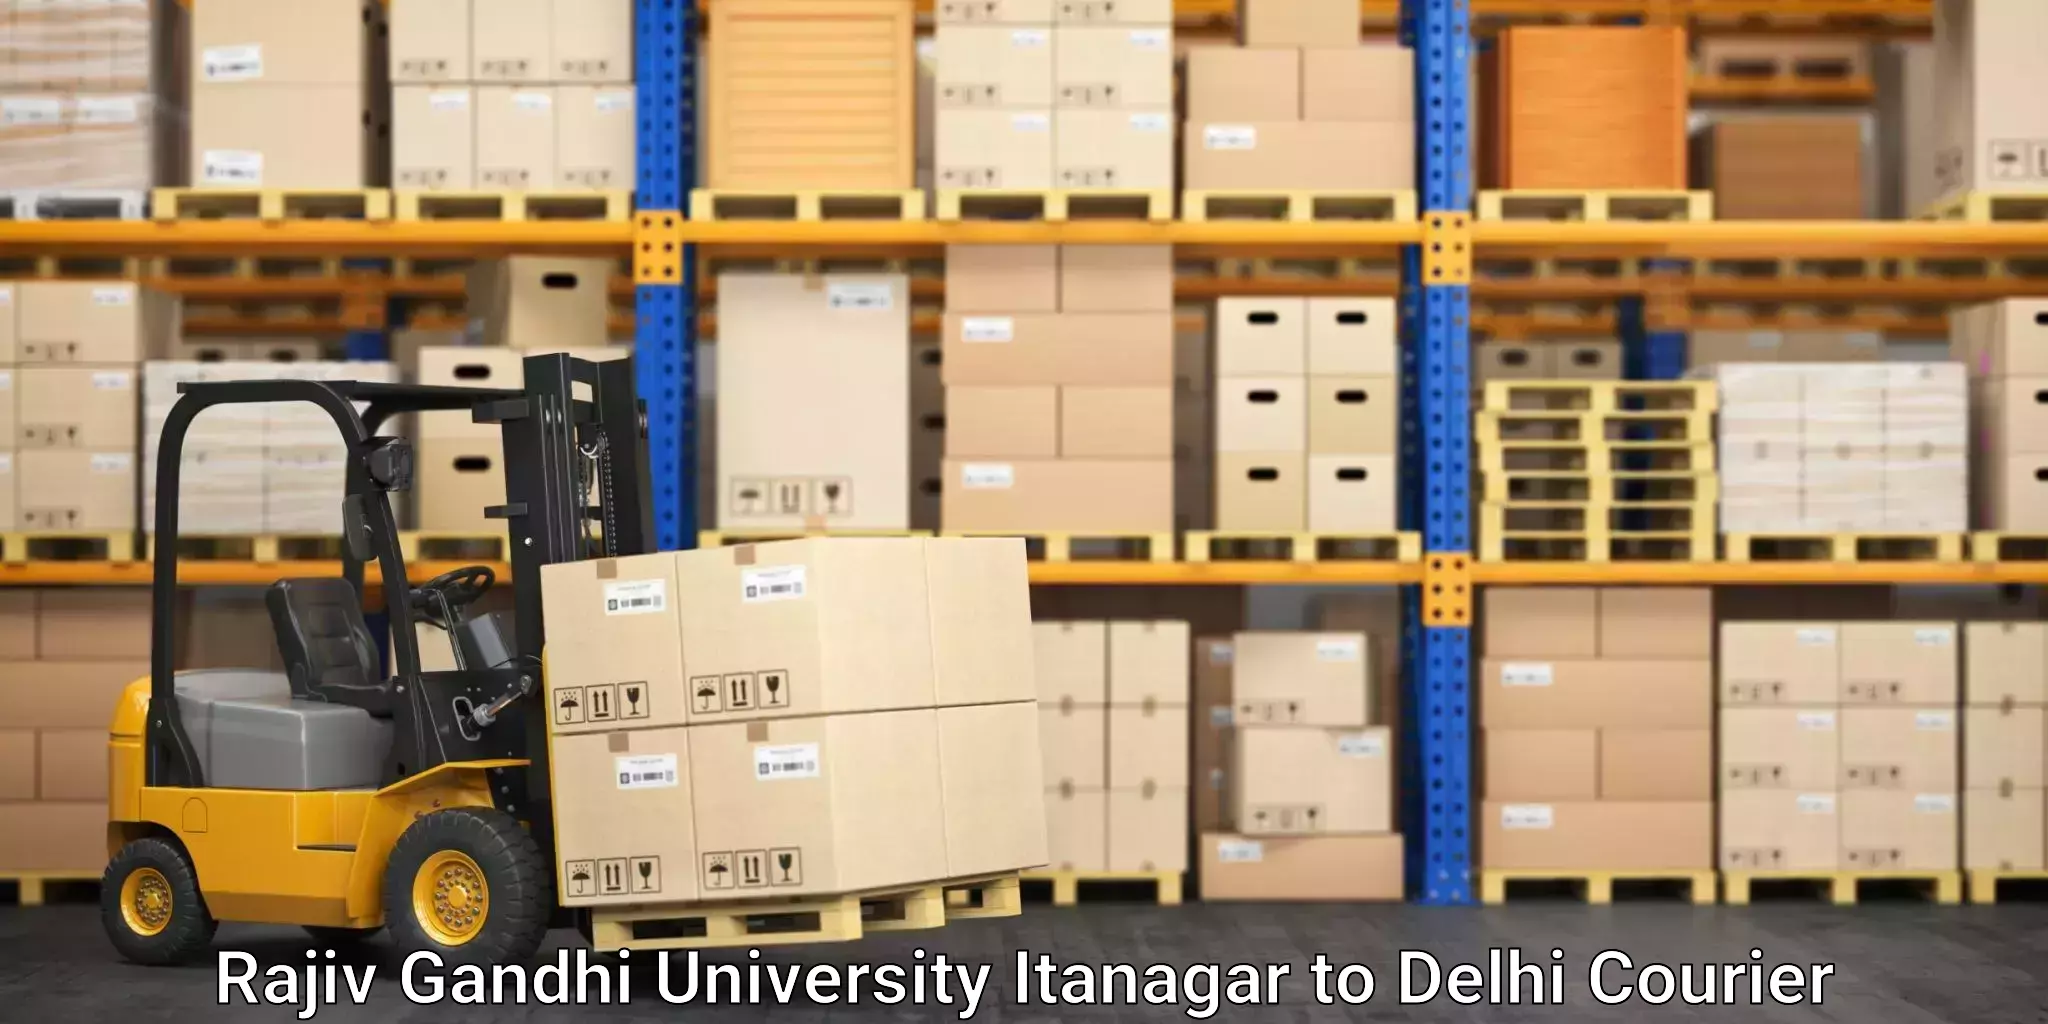 Express package services Rajiv Gandhi University Itanagar to Kalkaji